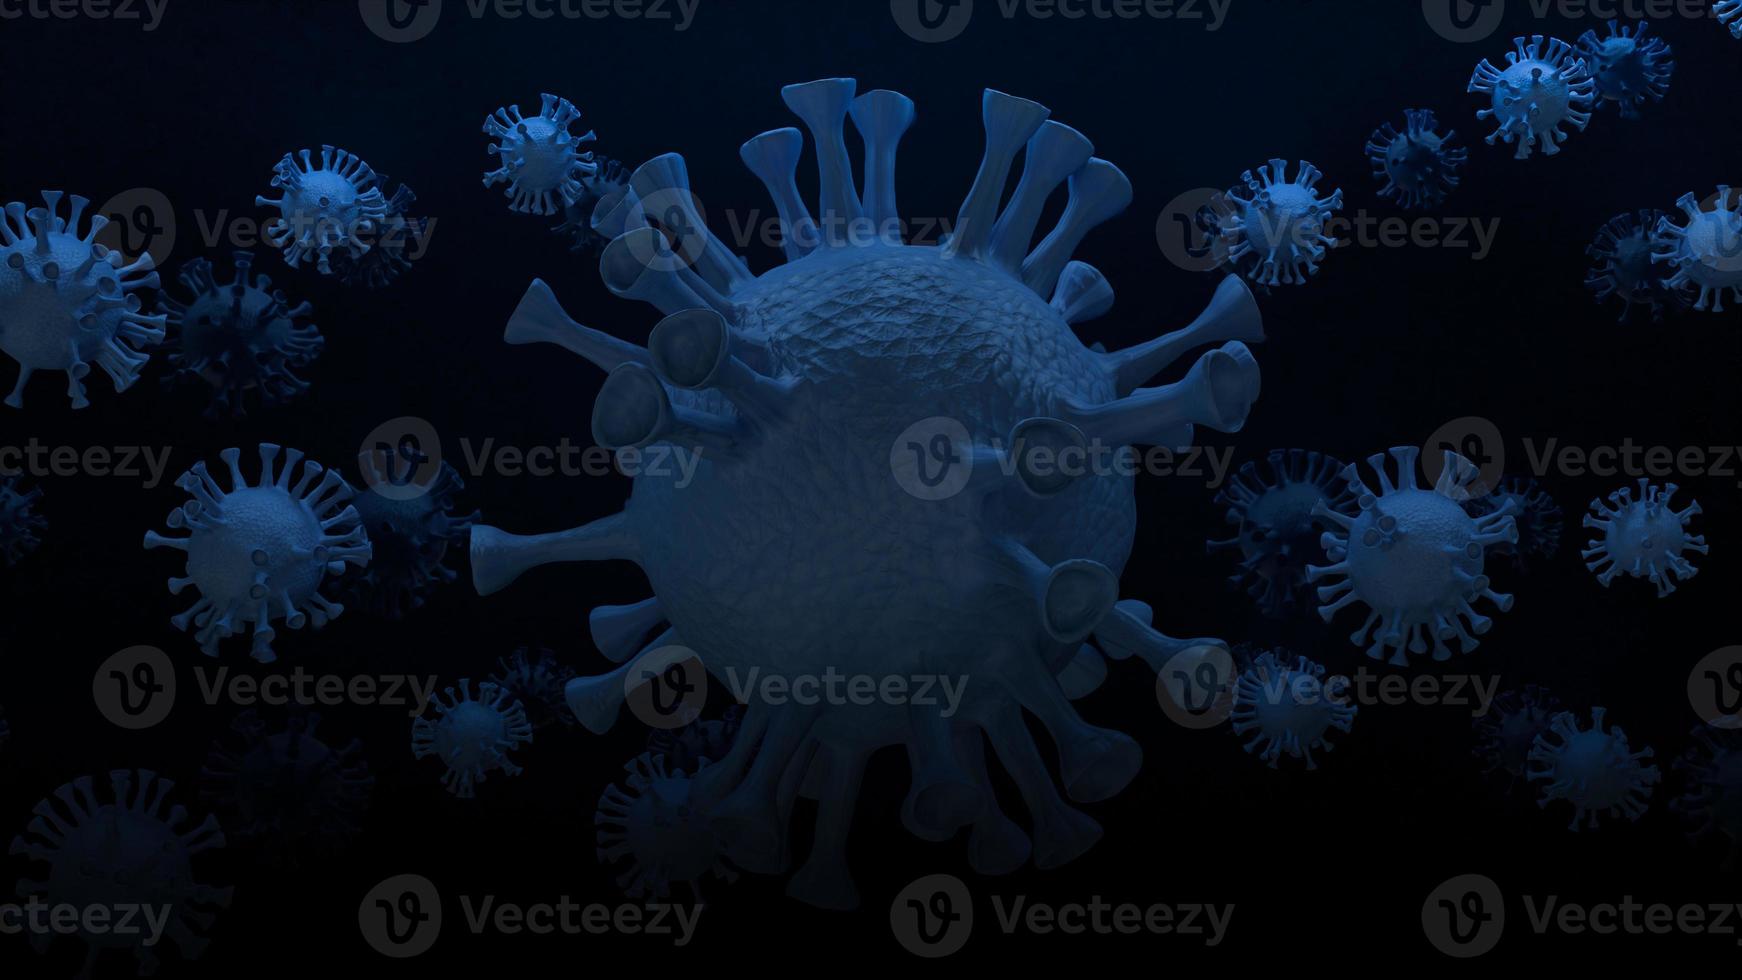 det blå viruset i mörk ton för utbrott eller medicinskt innehåll 3d-rendering foto